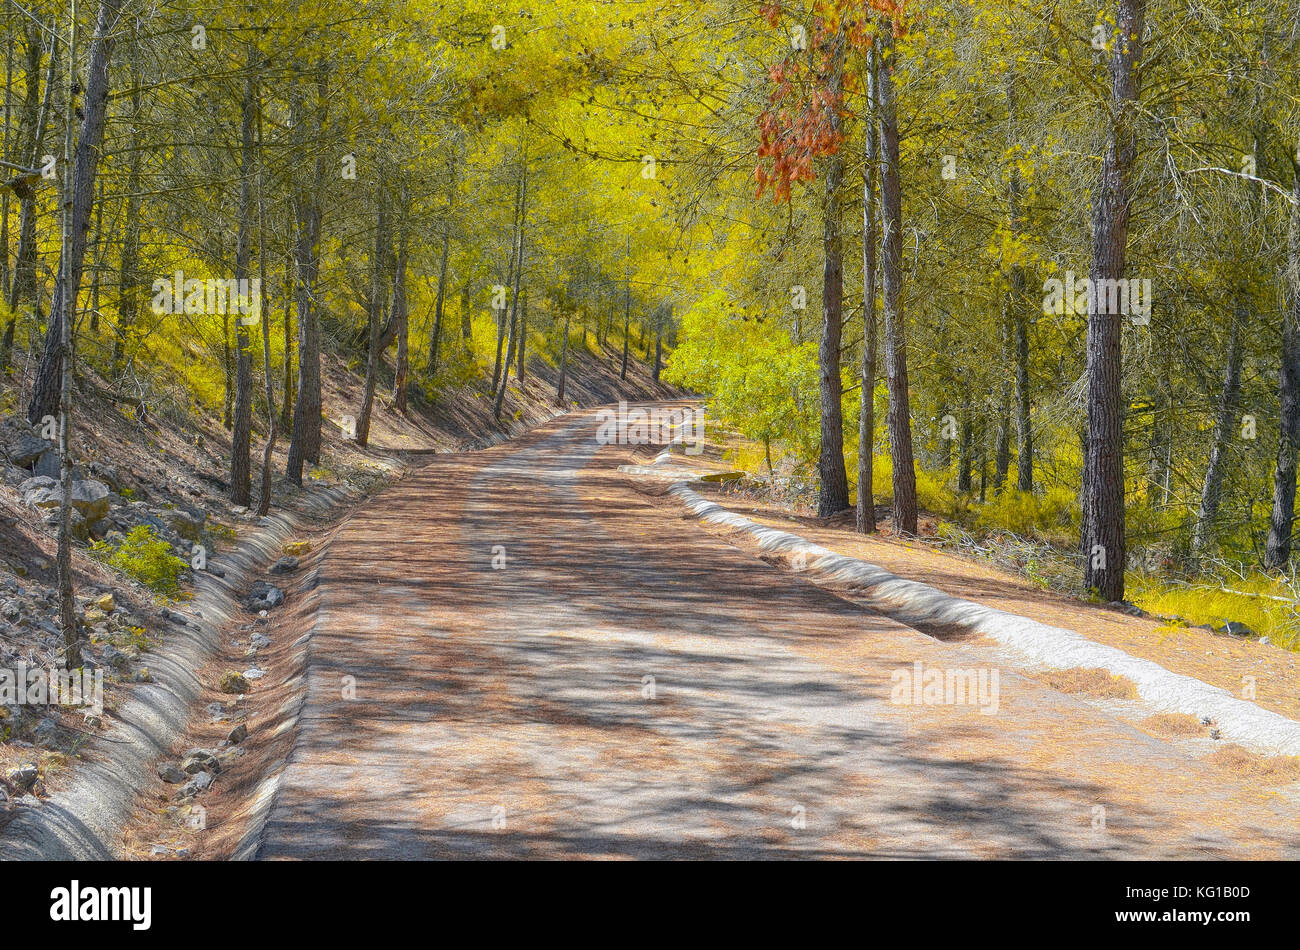 Scena di una strada di montagna con foglie secche sul marciapiede e alberi intorno, con foglie giallastre. Paesaggio colorato. Foresta mediterranea Foto Stock